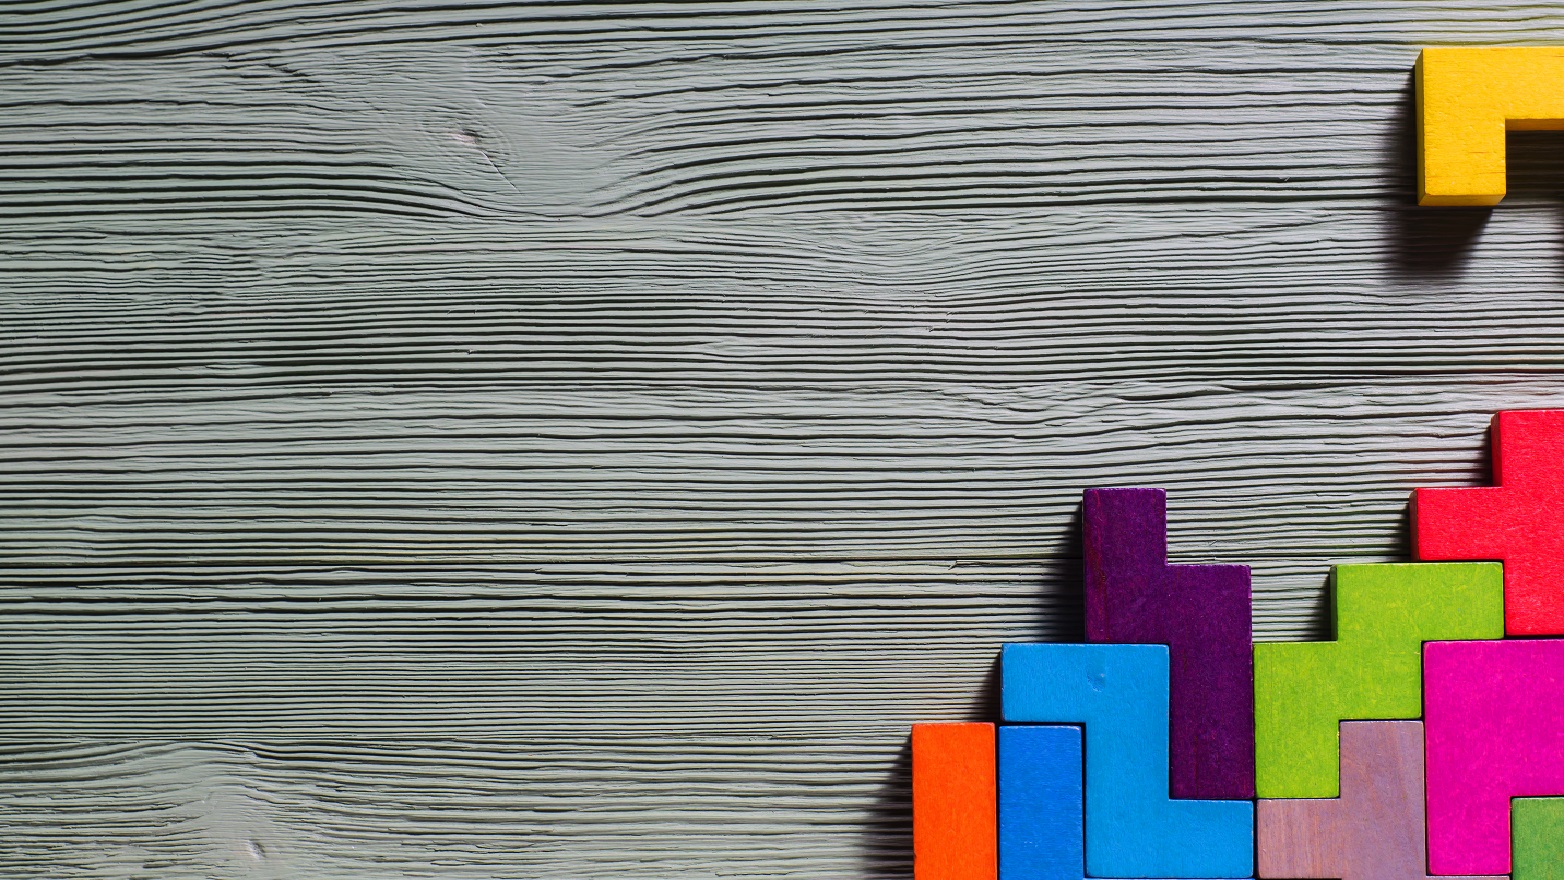 tetris blocks on wood background